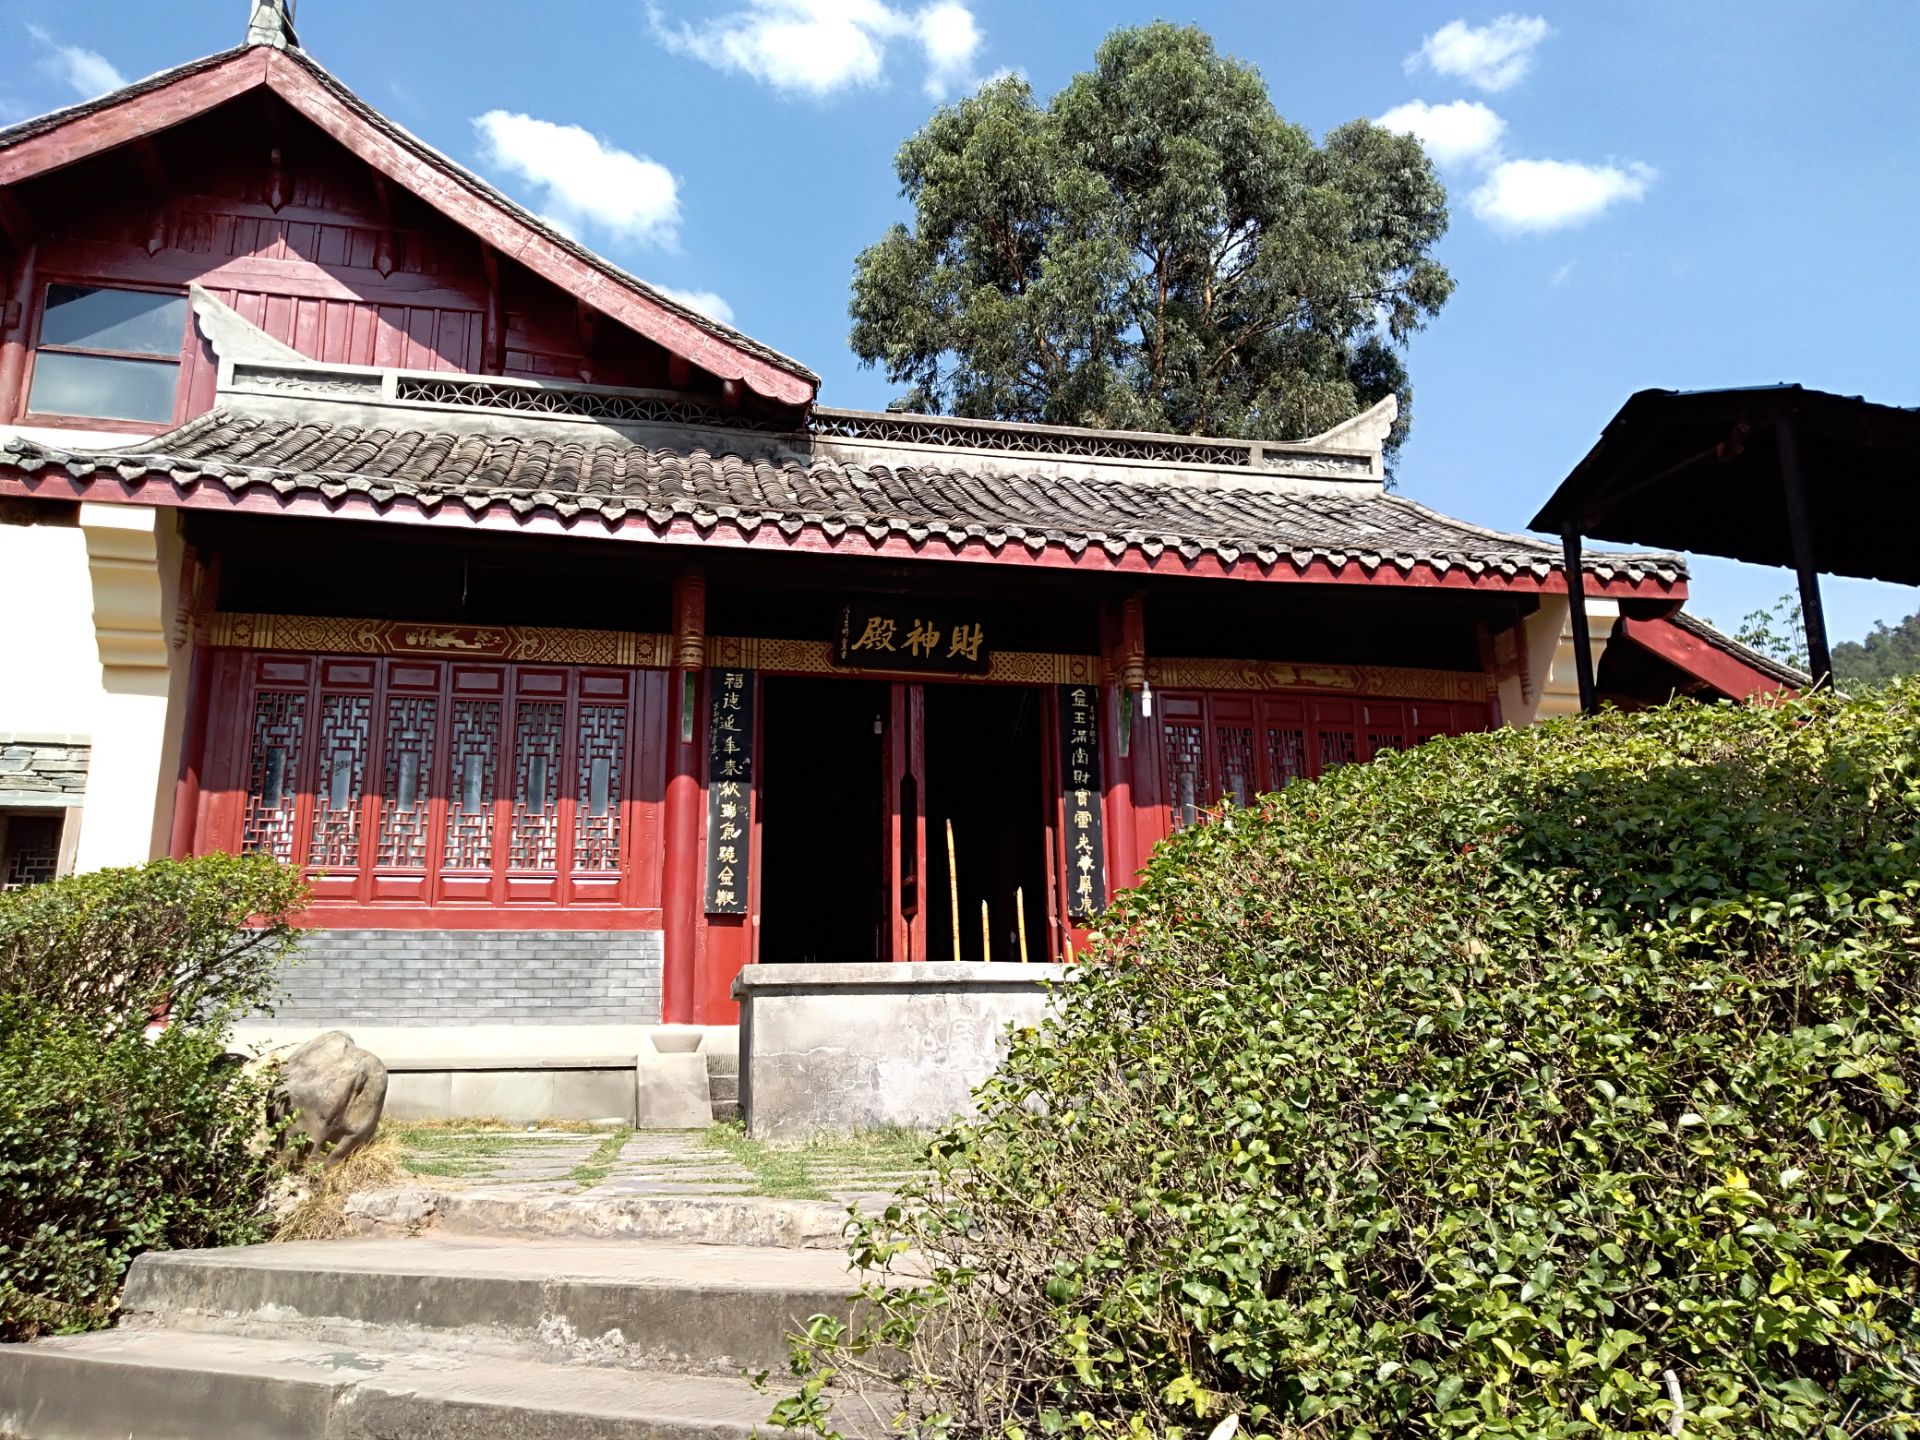 【携程攻略】西昌青龙寺景点,西昌青龙寺位于邛海东岸的山腰处,是一个